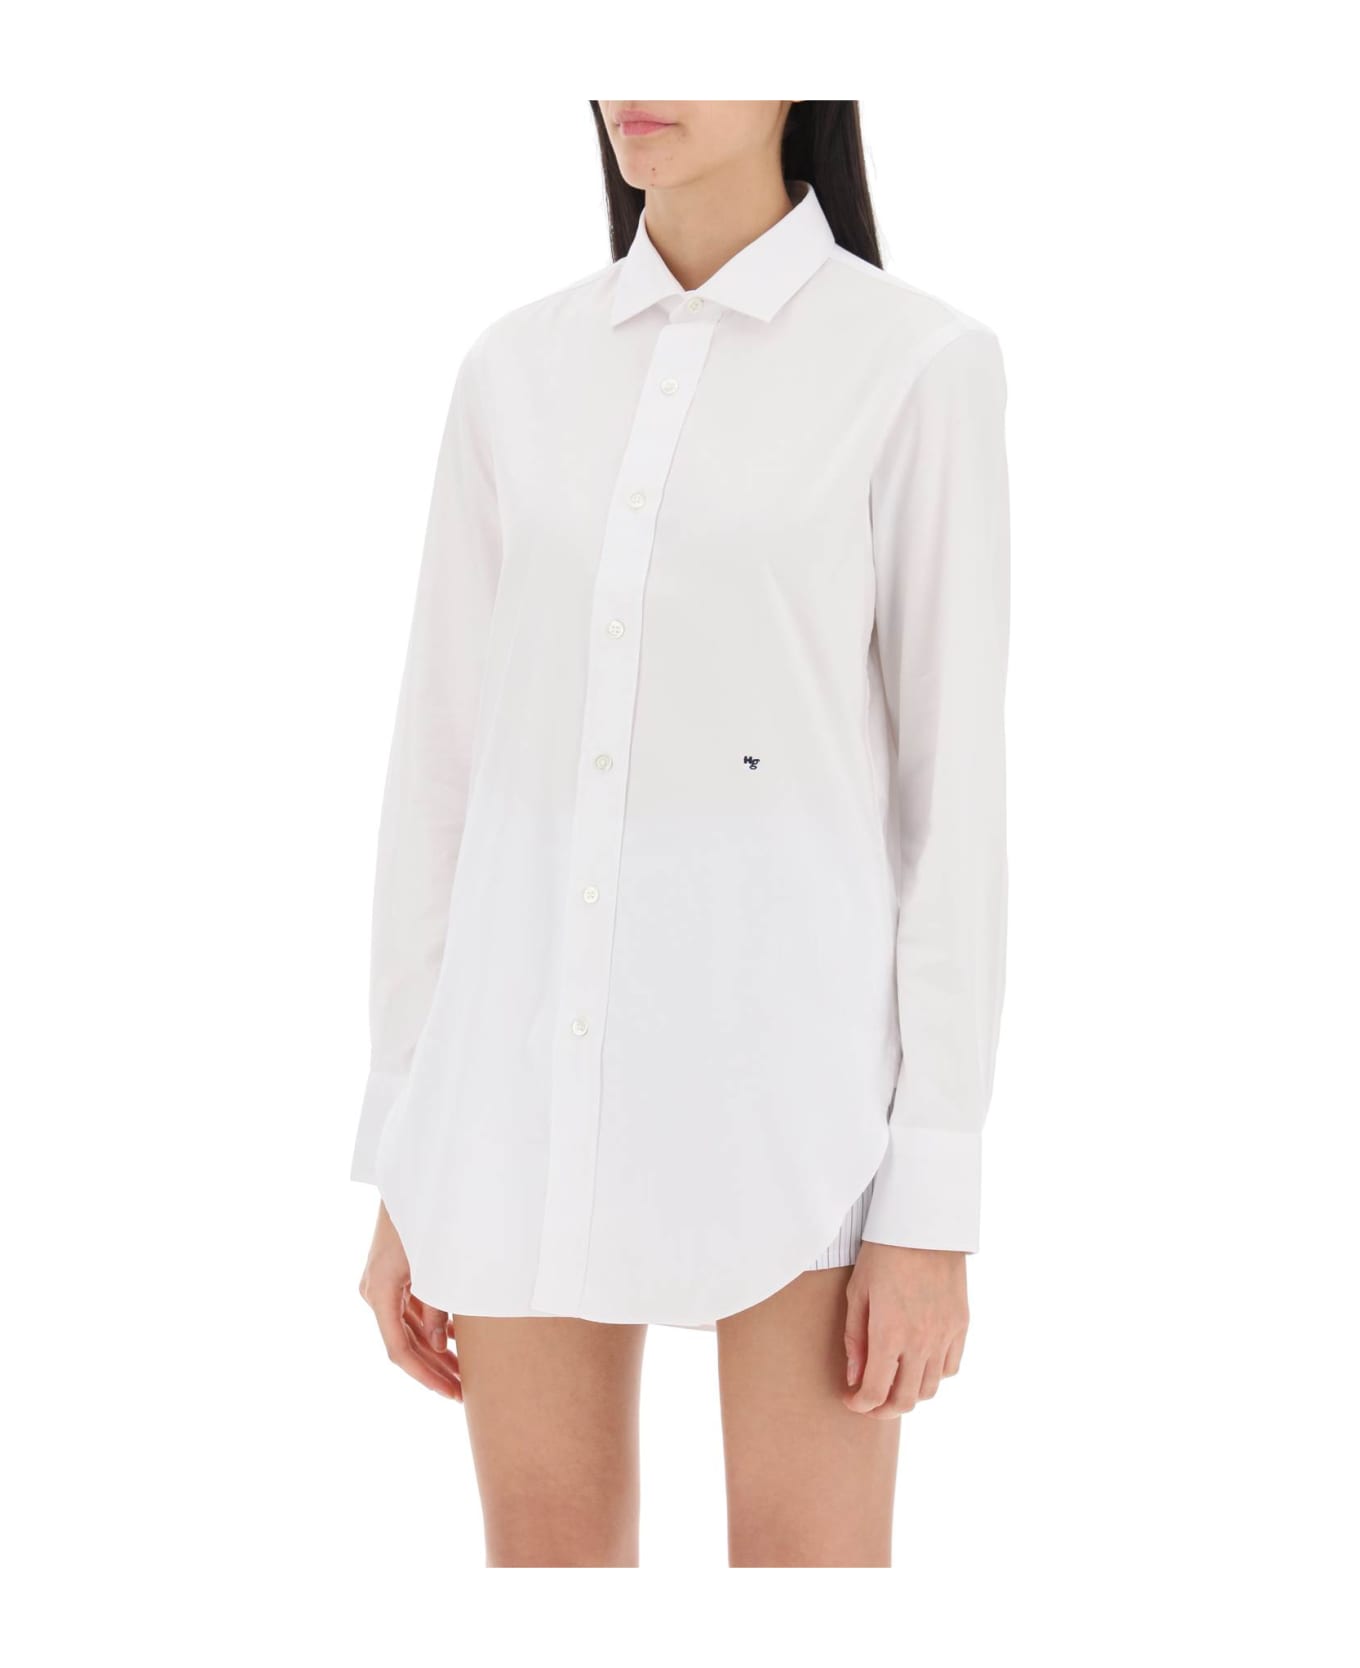 HommeGirls Cotton Twill Shirt - WHITE (White) シャツ